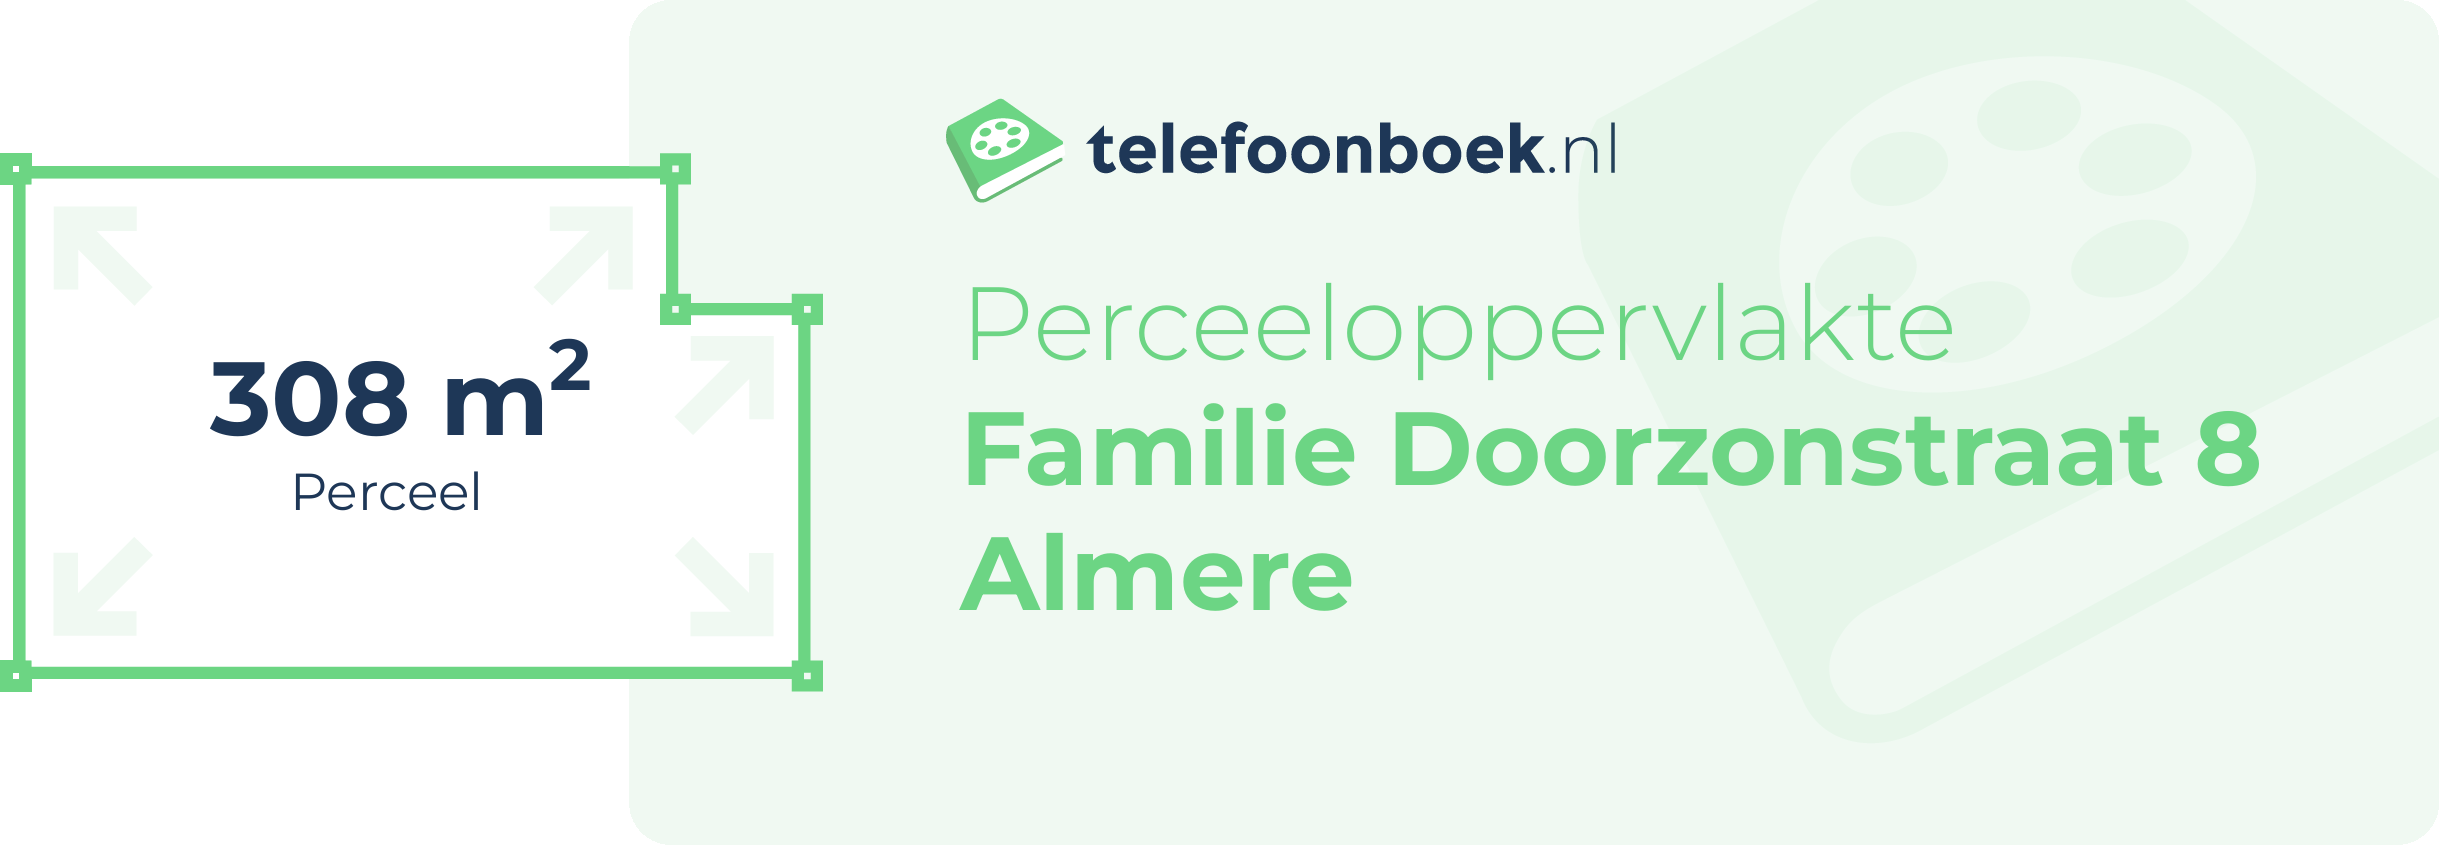 Perceeloppervlakte Familie Doorzonstraat 8 Almere